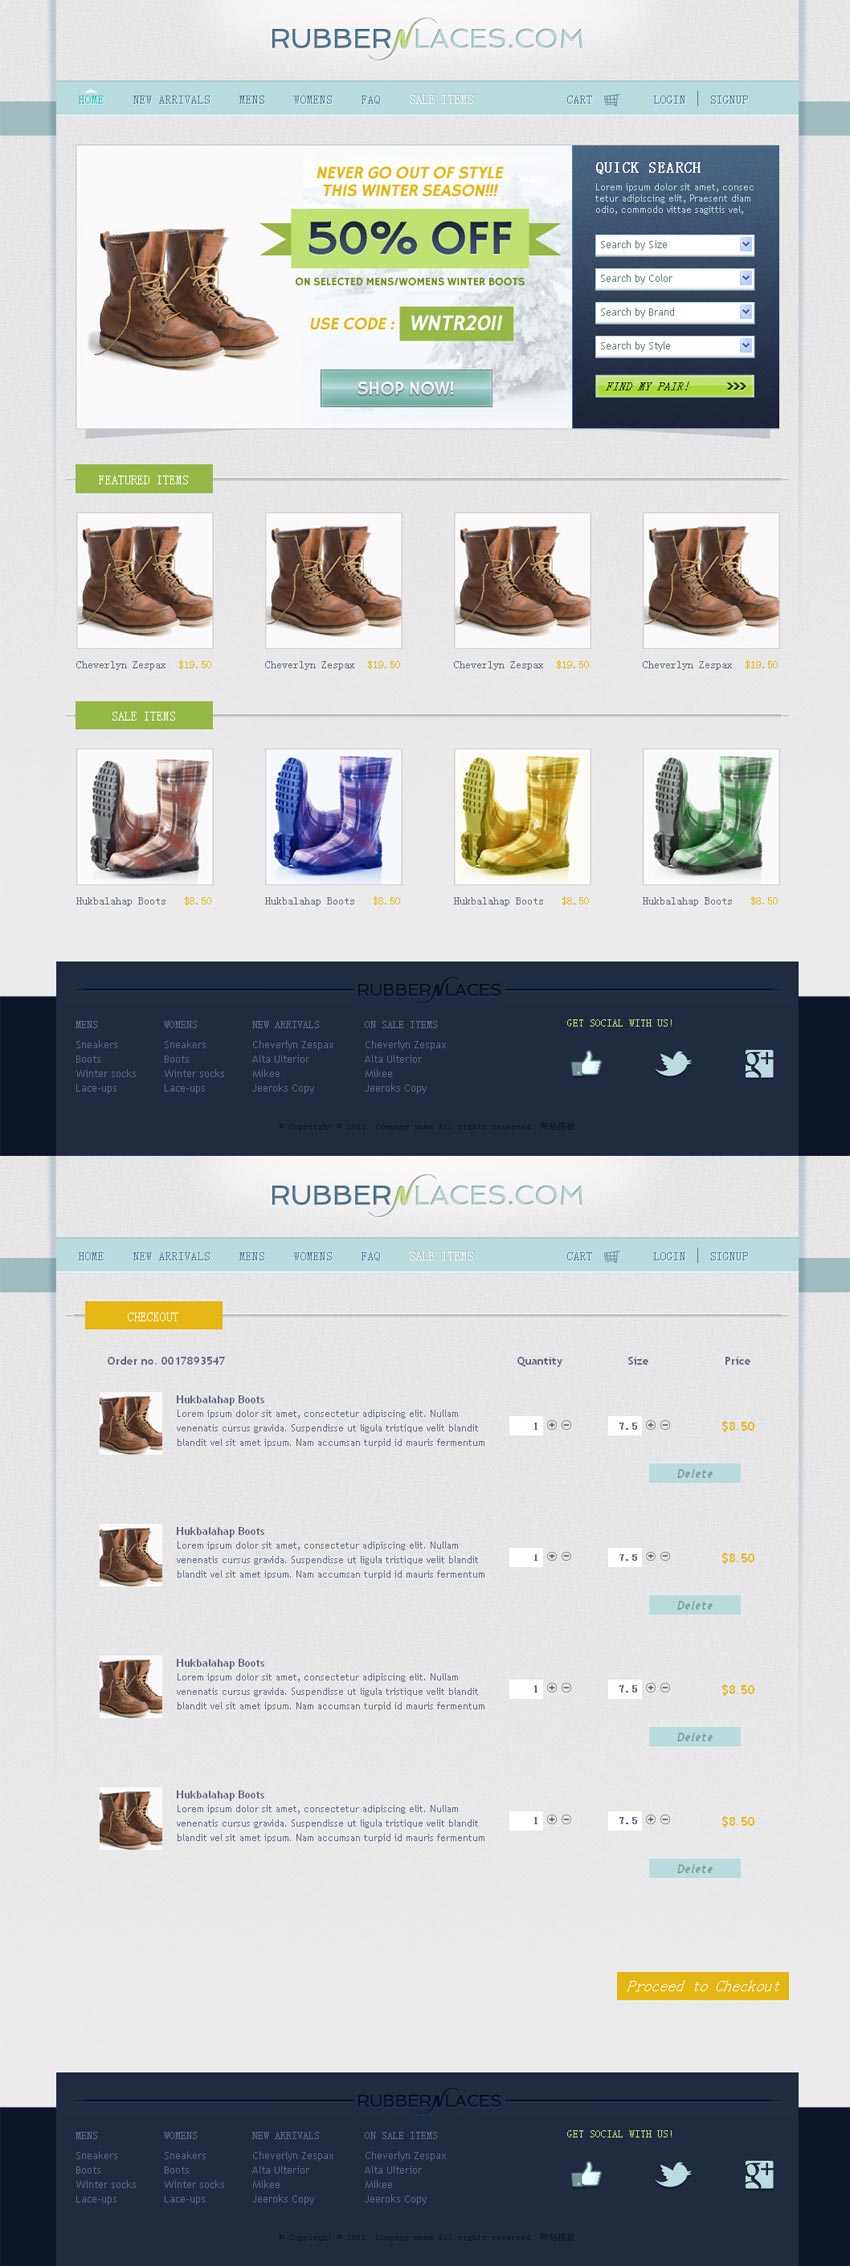 国外简洁的鞋子专门店网上购物商城模板html源码下载_商城网站模板